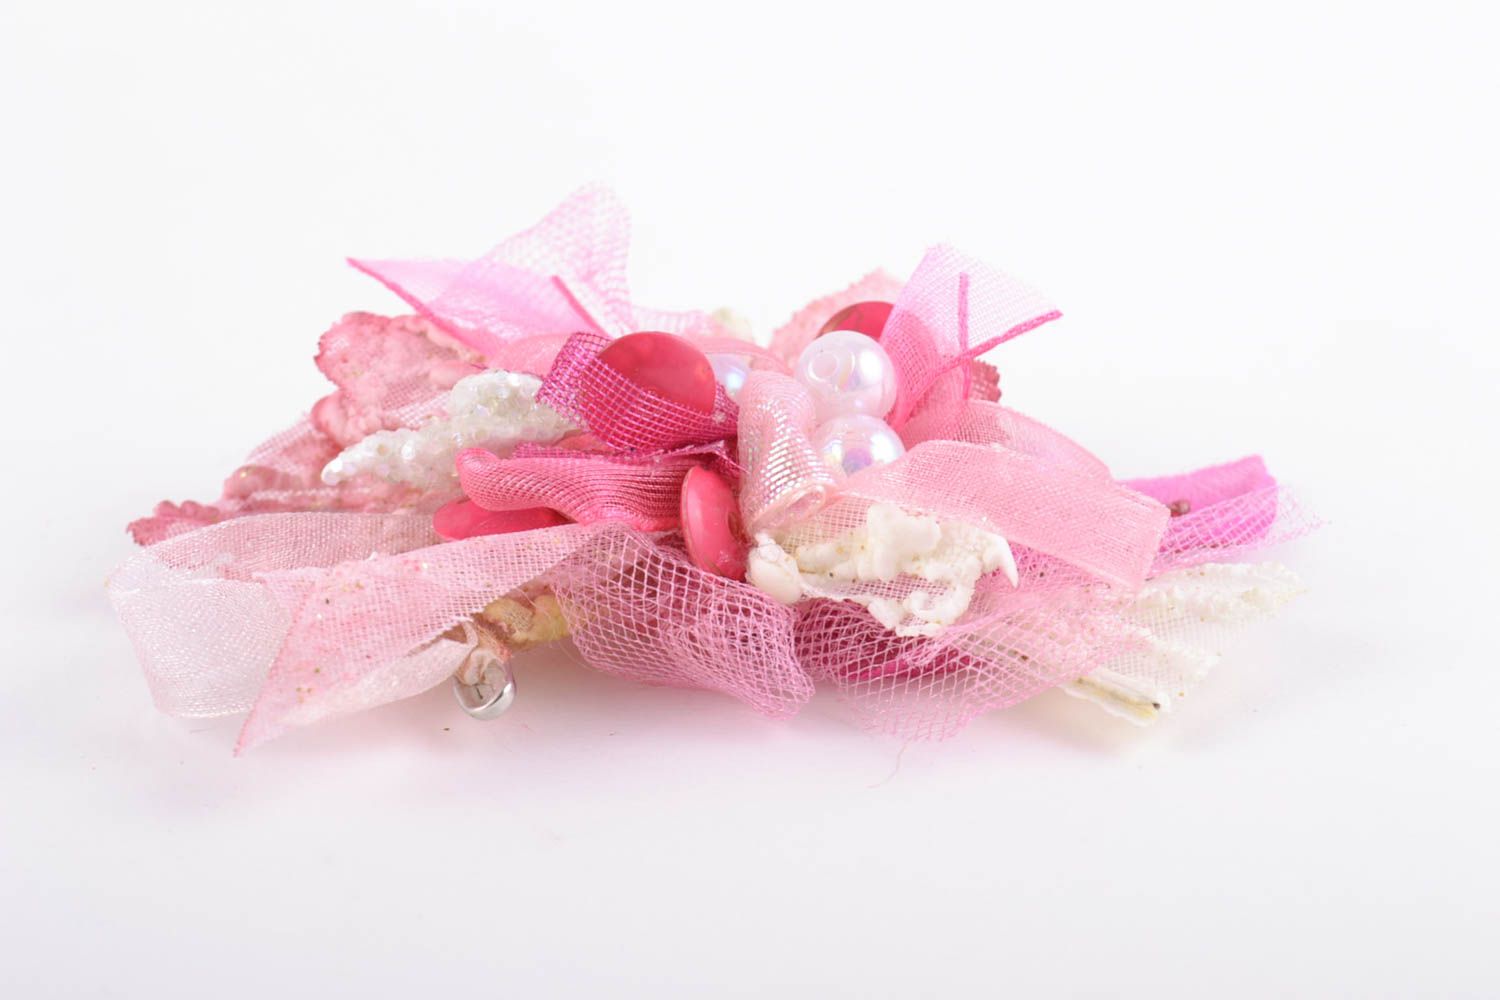 Розовая заготовка под заколку или брошь текстильная основа для аксессуара  фото 5